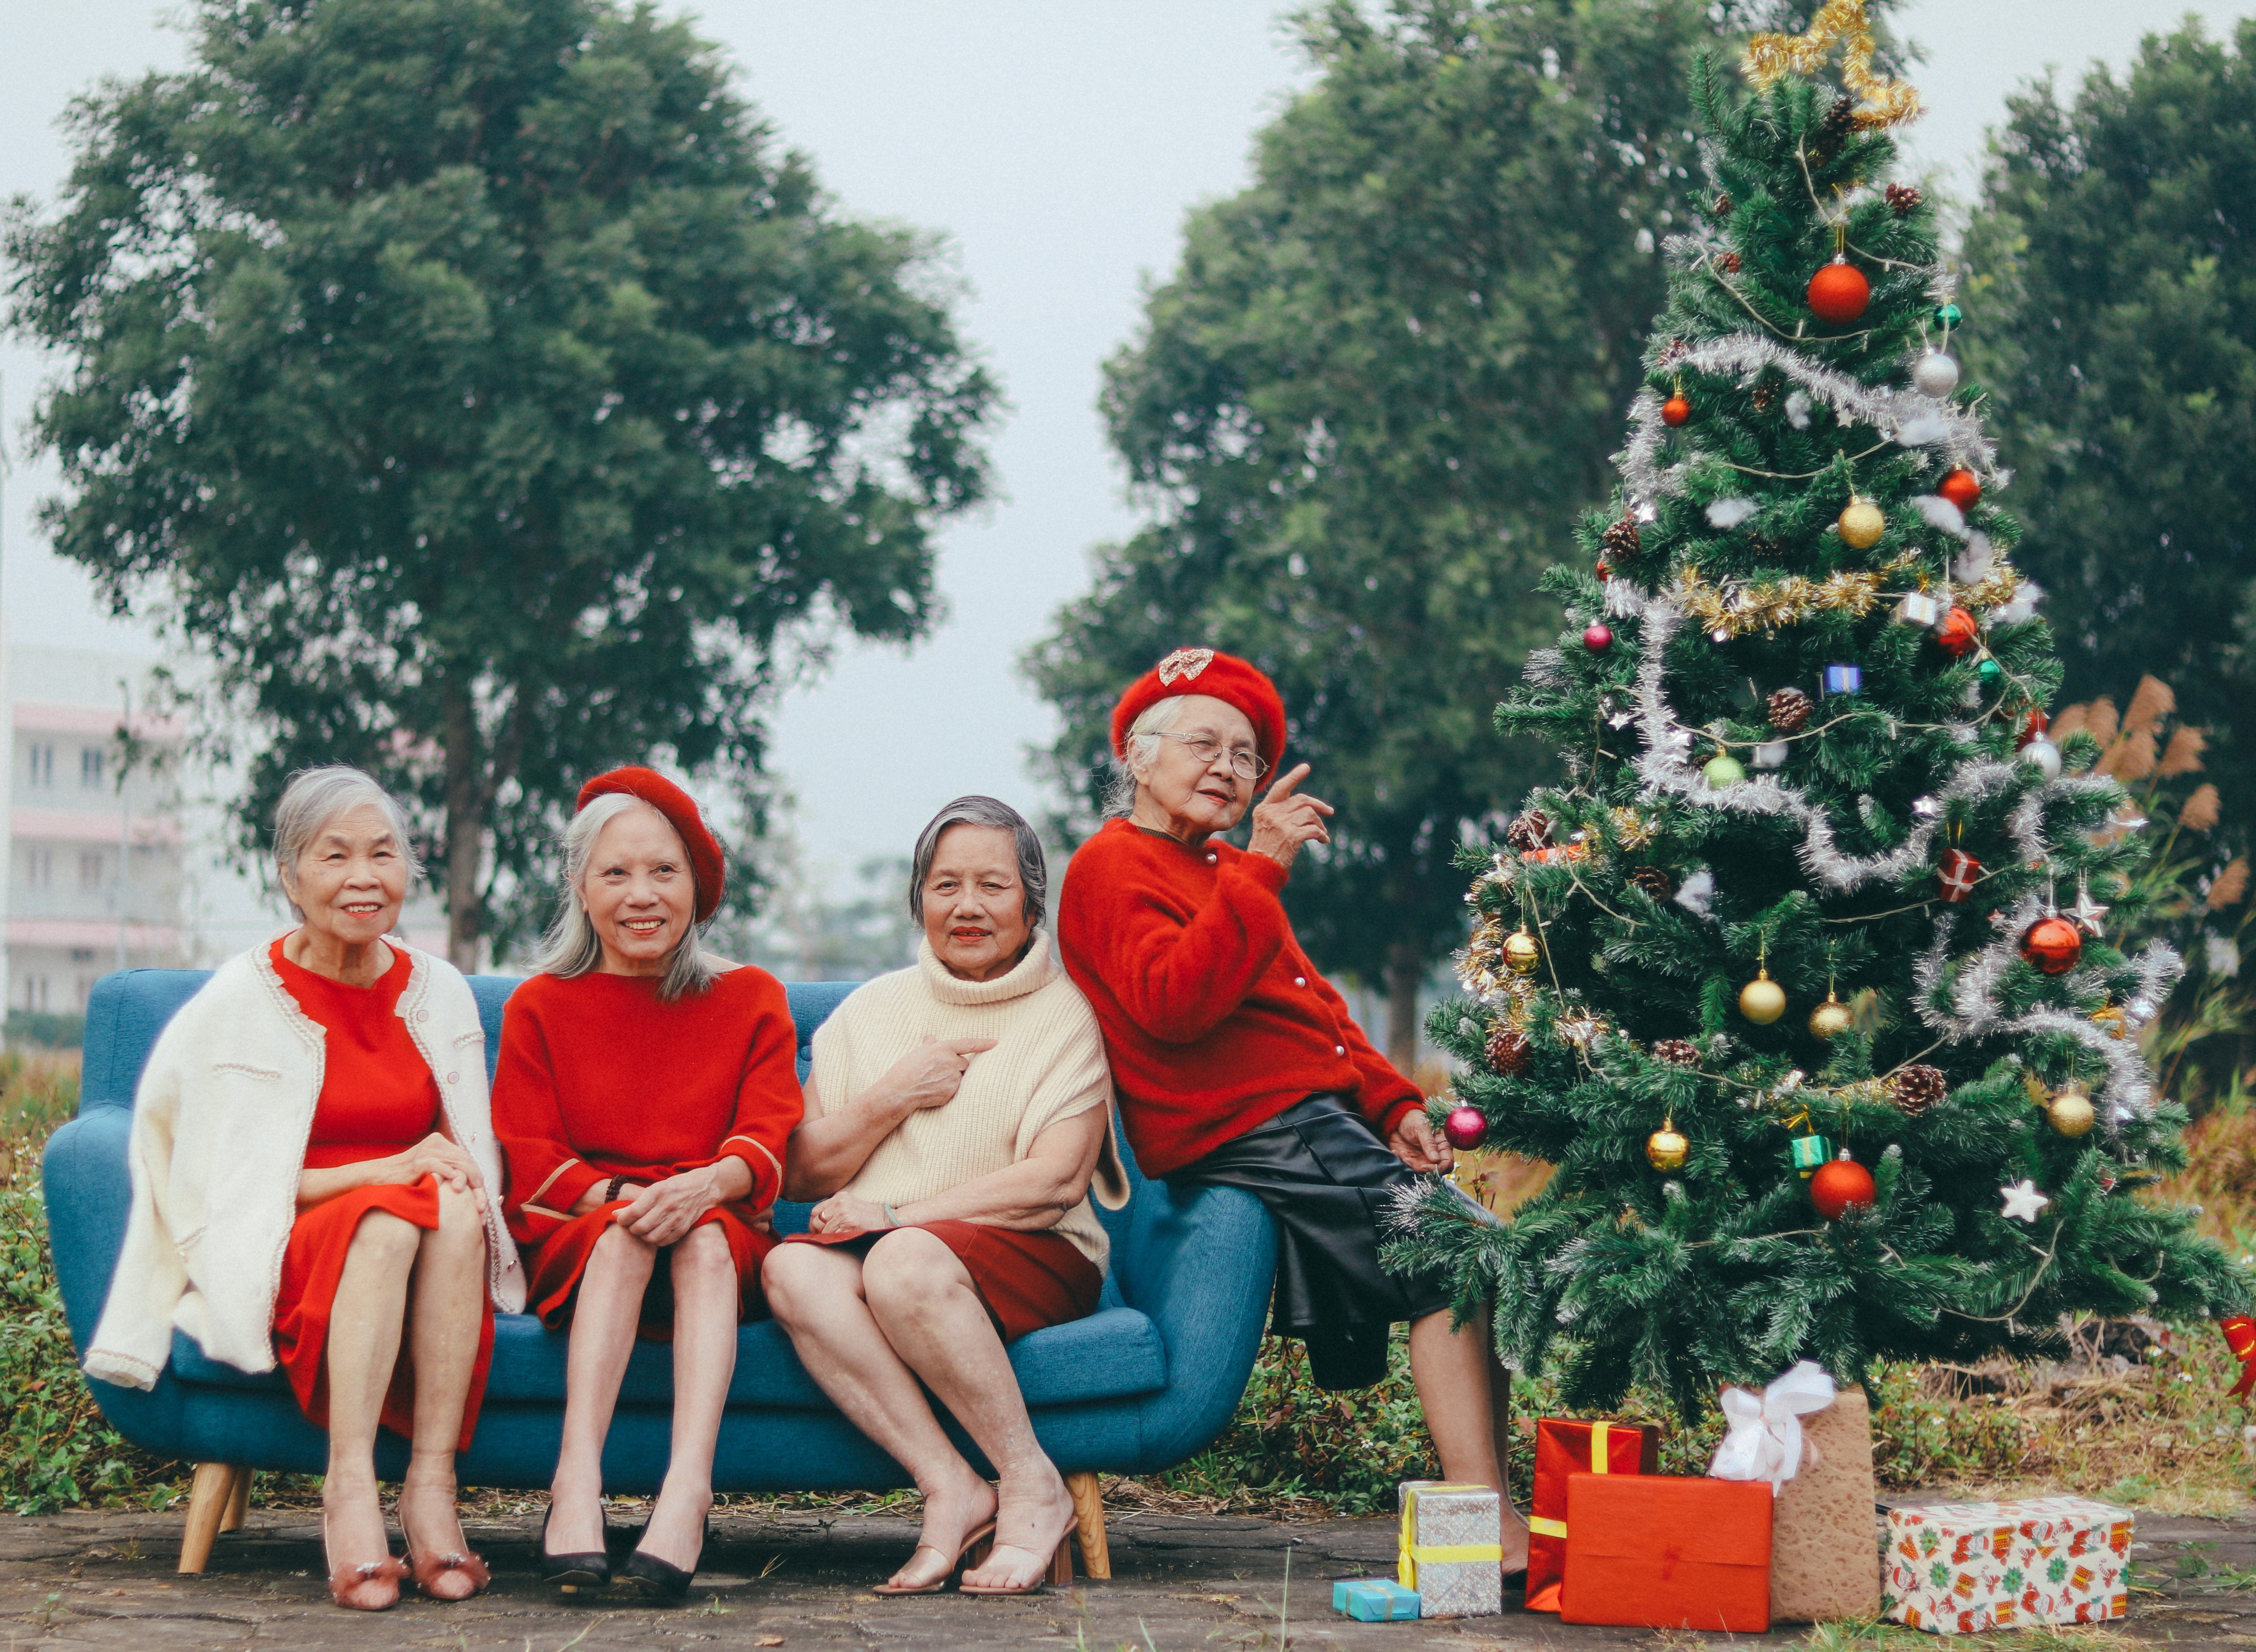 Khám phá địa điểm chơi Noel 2019 Hà Nội và tham gia vào không gian lễ hội phù hợp cho cả gia đình. Tận hưởng không khí Giáng sinh đốn tim và thỏa sức tận hưởng hơn nhiều trò chơi và hoạt động thú vị, đầy màu sắc tại những điểm đến hấp dẫn này.